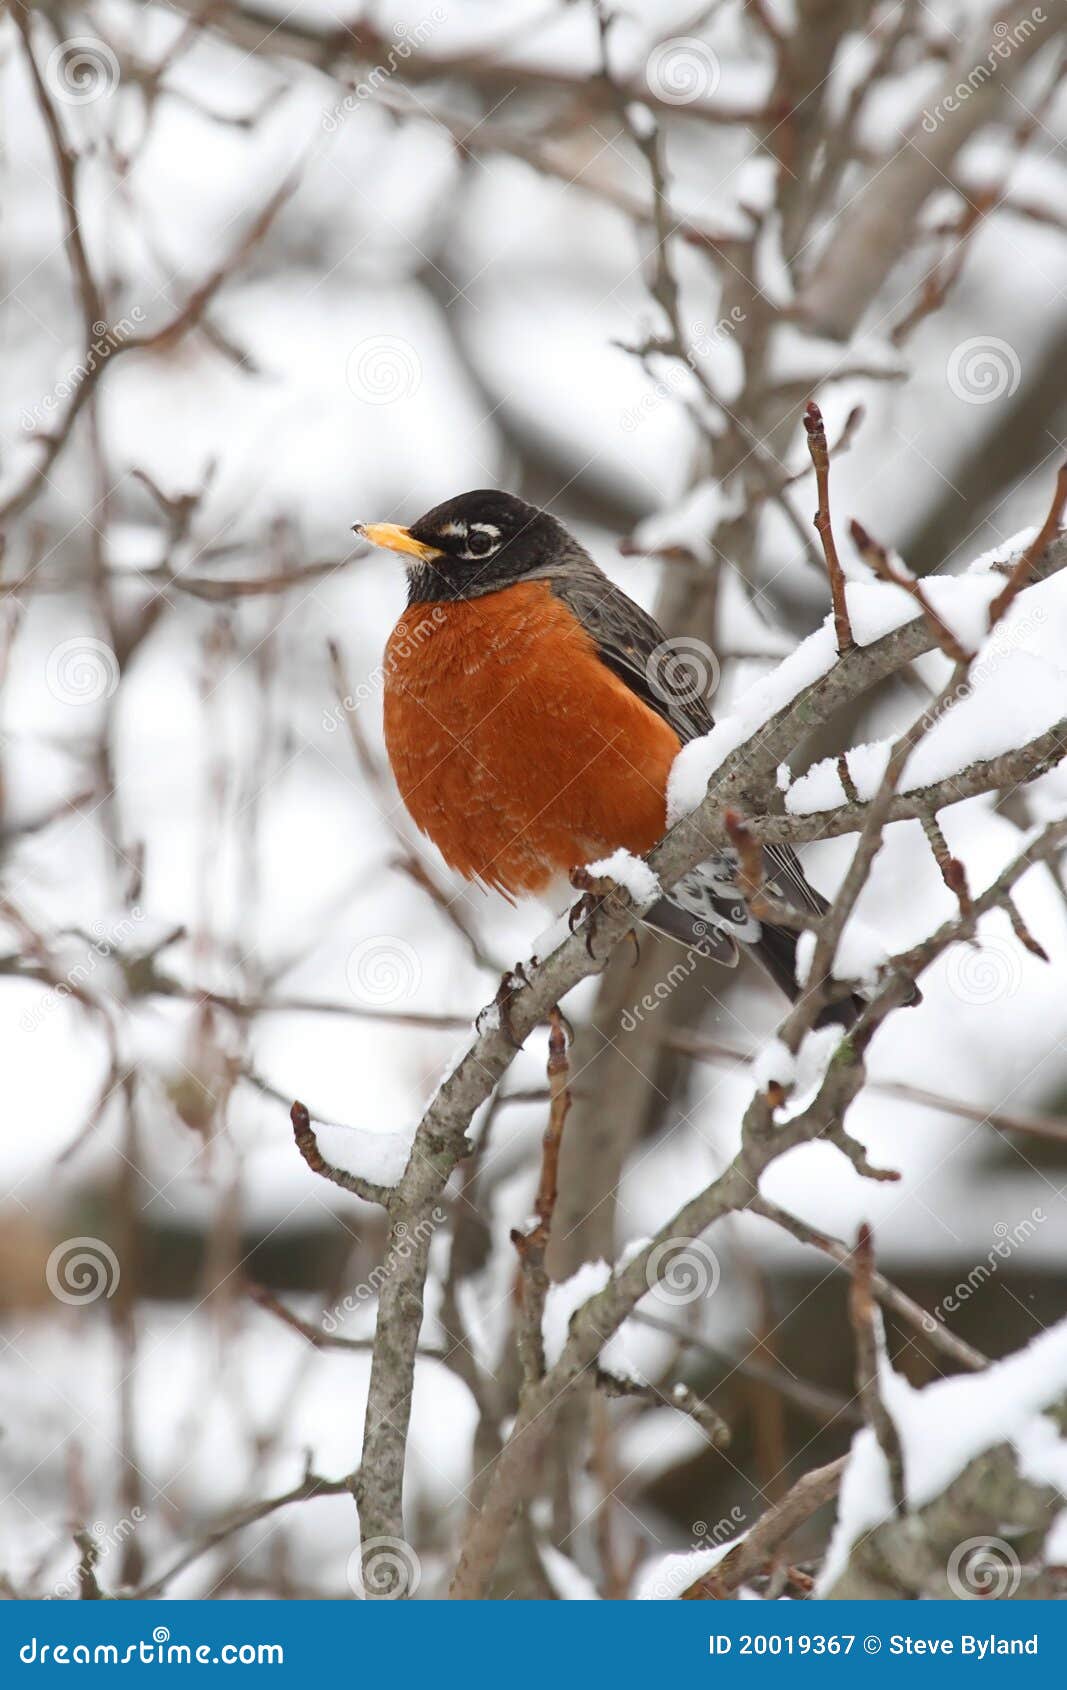 american robin (turdus migratorius)